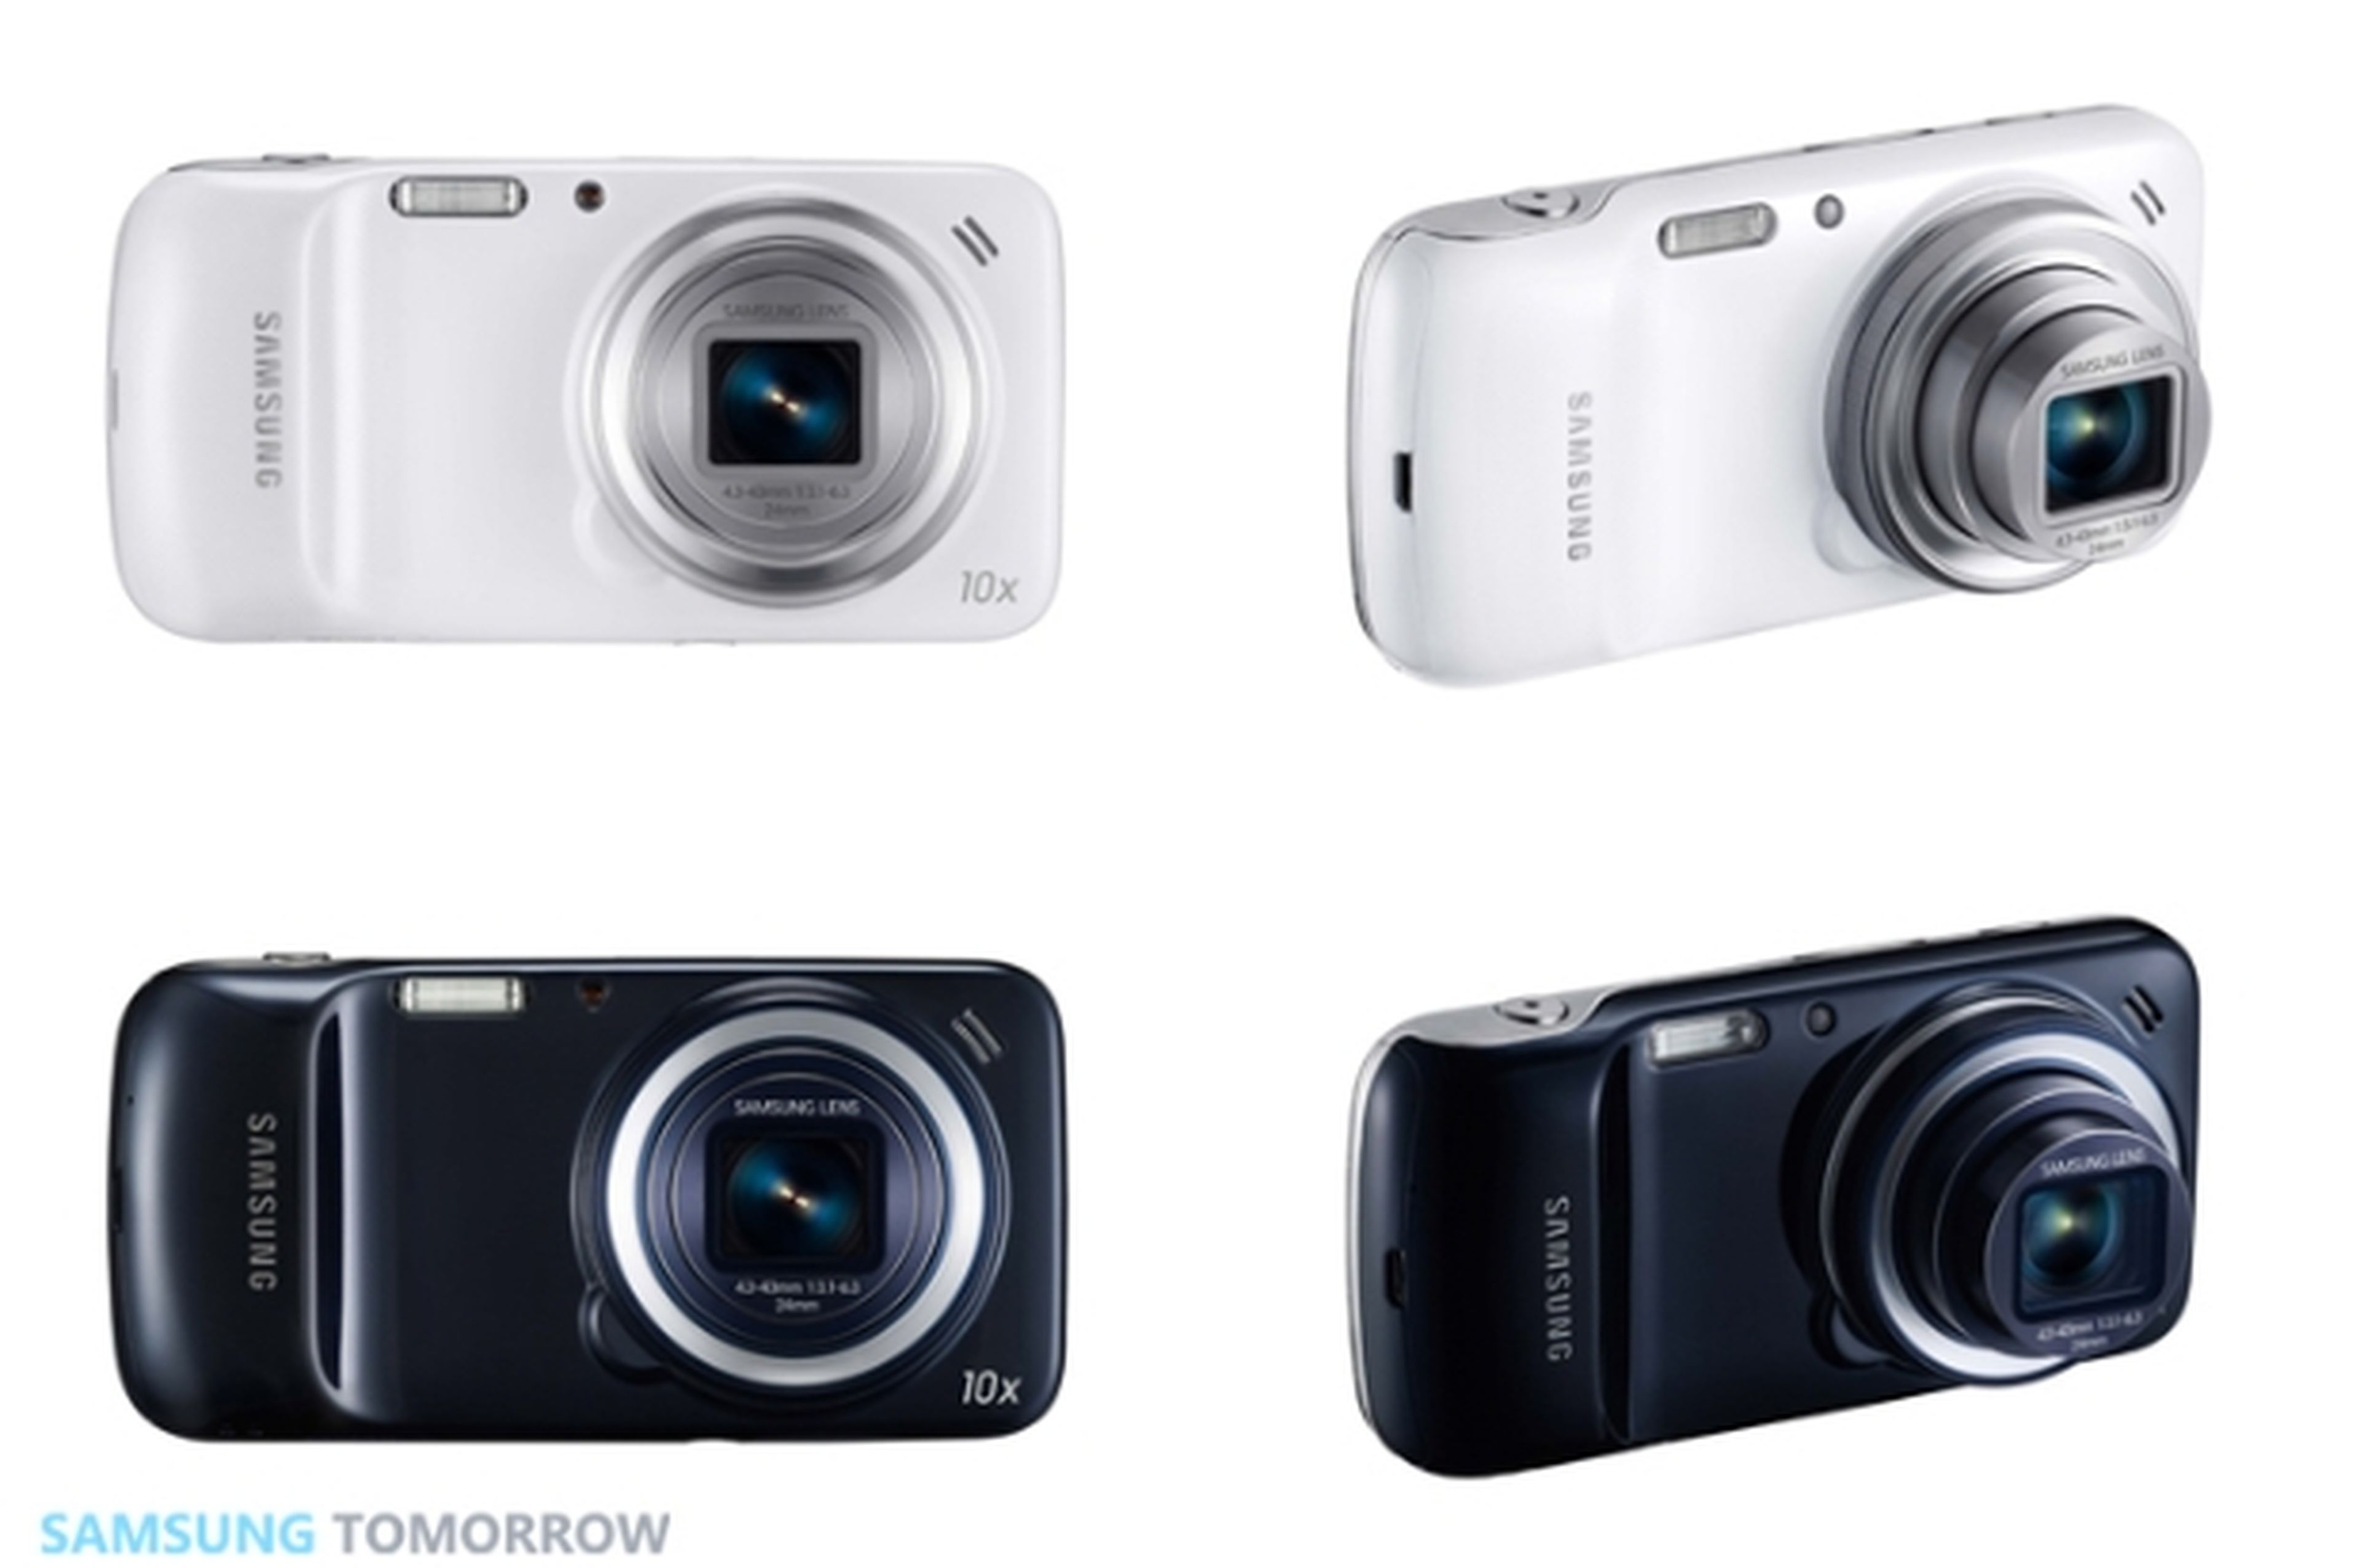 El híbrido de cámara y smartphone Samsung Galaxy S4 Zoom con 4G LTE llega a Europa